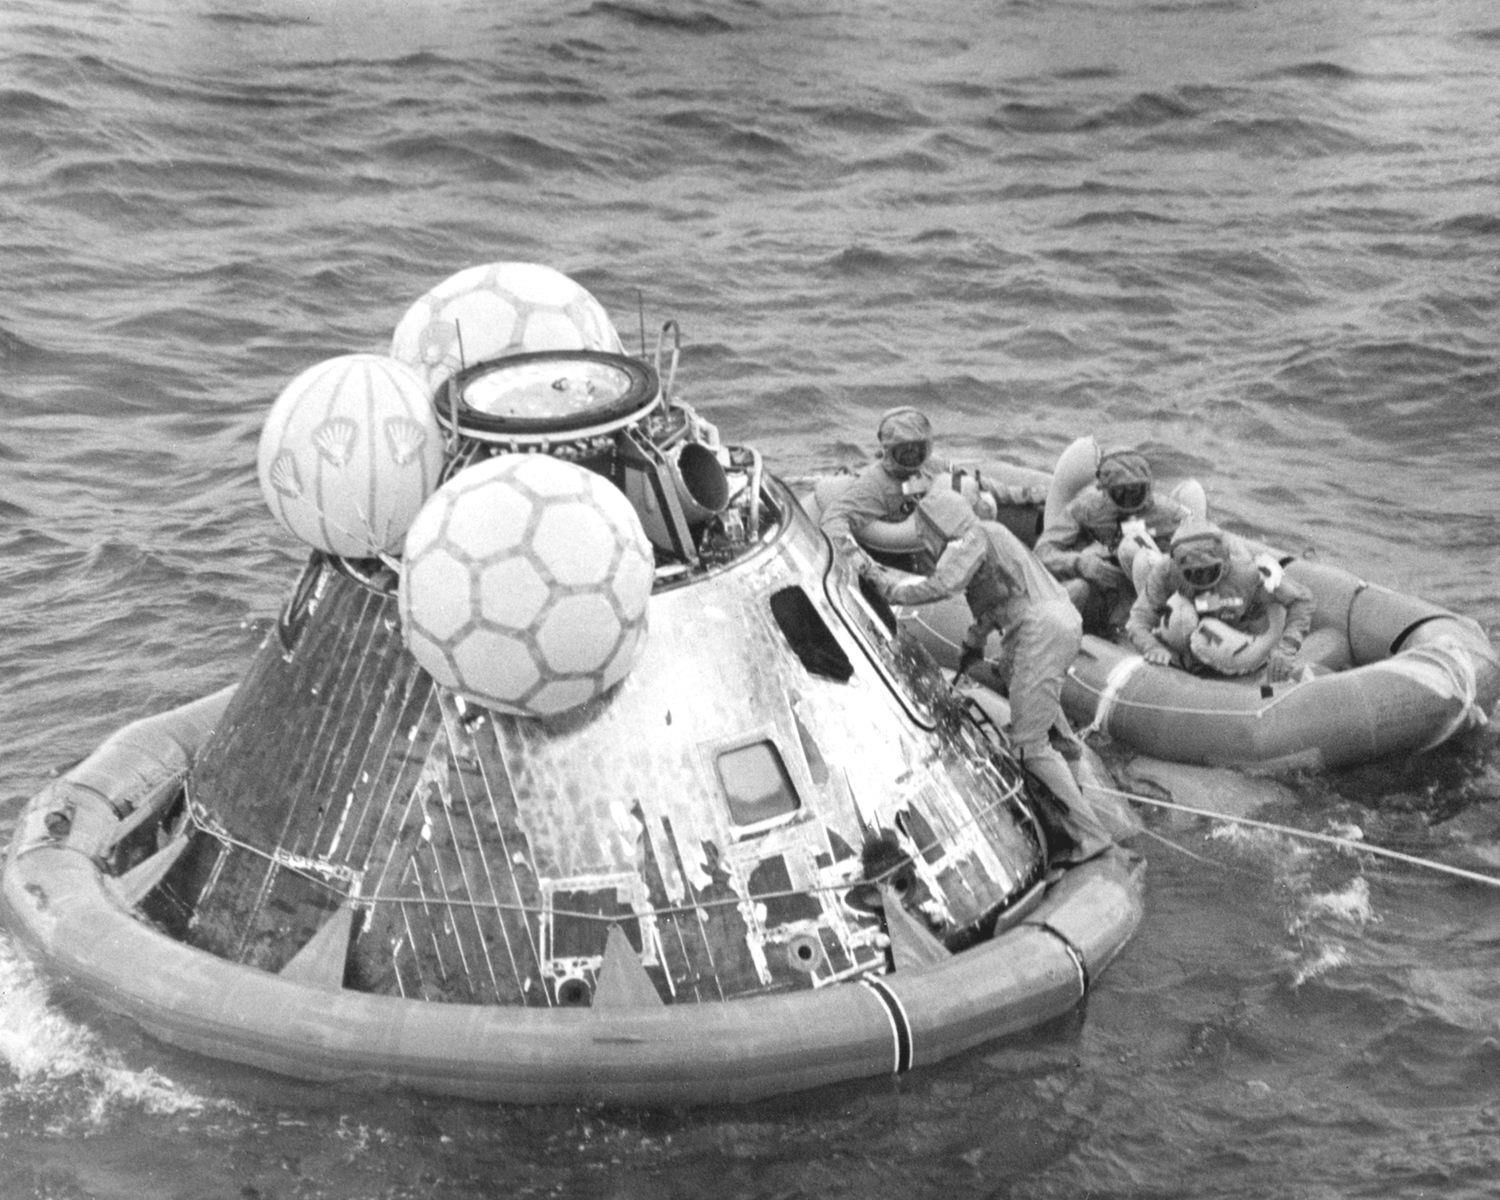 Le 24 juillet 1969, huit jours après leur lancement dans l’espace, les <a href="https://www.quebecscience.qc.ca/espace/il-y-a-50-ans-premiers-pas-lune/" rel="noreferrer noopener">astronautes d’Apollo 11 sont revenus</a> sur Terre, s’échouant dans l’océan Pacifique à environ 21 km du navire de récupération USS Hornet. Le mauvais temps a contraint le contrôle de la mission à modifier le point d’atterrissage d’environ 400 km par rapport à la zone cible initiale, et ils ont amerri <a href="https://www.voileetmoteur.com/bateaux-a-moteur/actualites/video-le-24-juillet-1969-lamerrissage-dapollo-11/83263" rel="noreferrer noopener">à environ 800 milles nautiques</a> au sud-ouest d’Hawaï. Lorsque Armstrong, Collins et Aldrin sont sortis de la capsule, ils portaient des combinaisons de protection biologique au cas où ils auraient transporté des bactéries toxiques de la Lune.